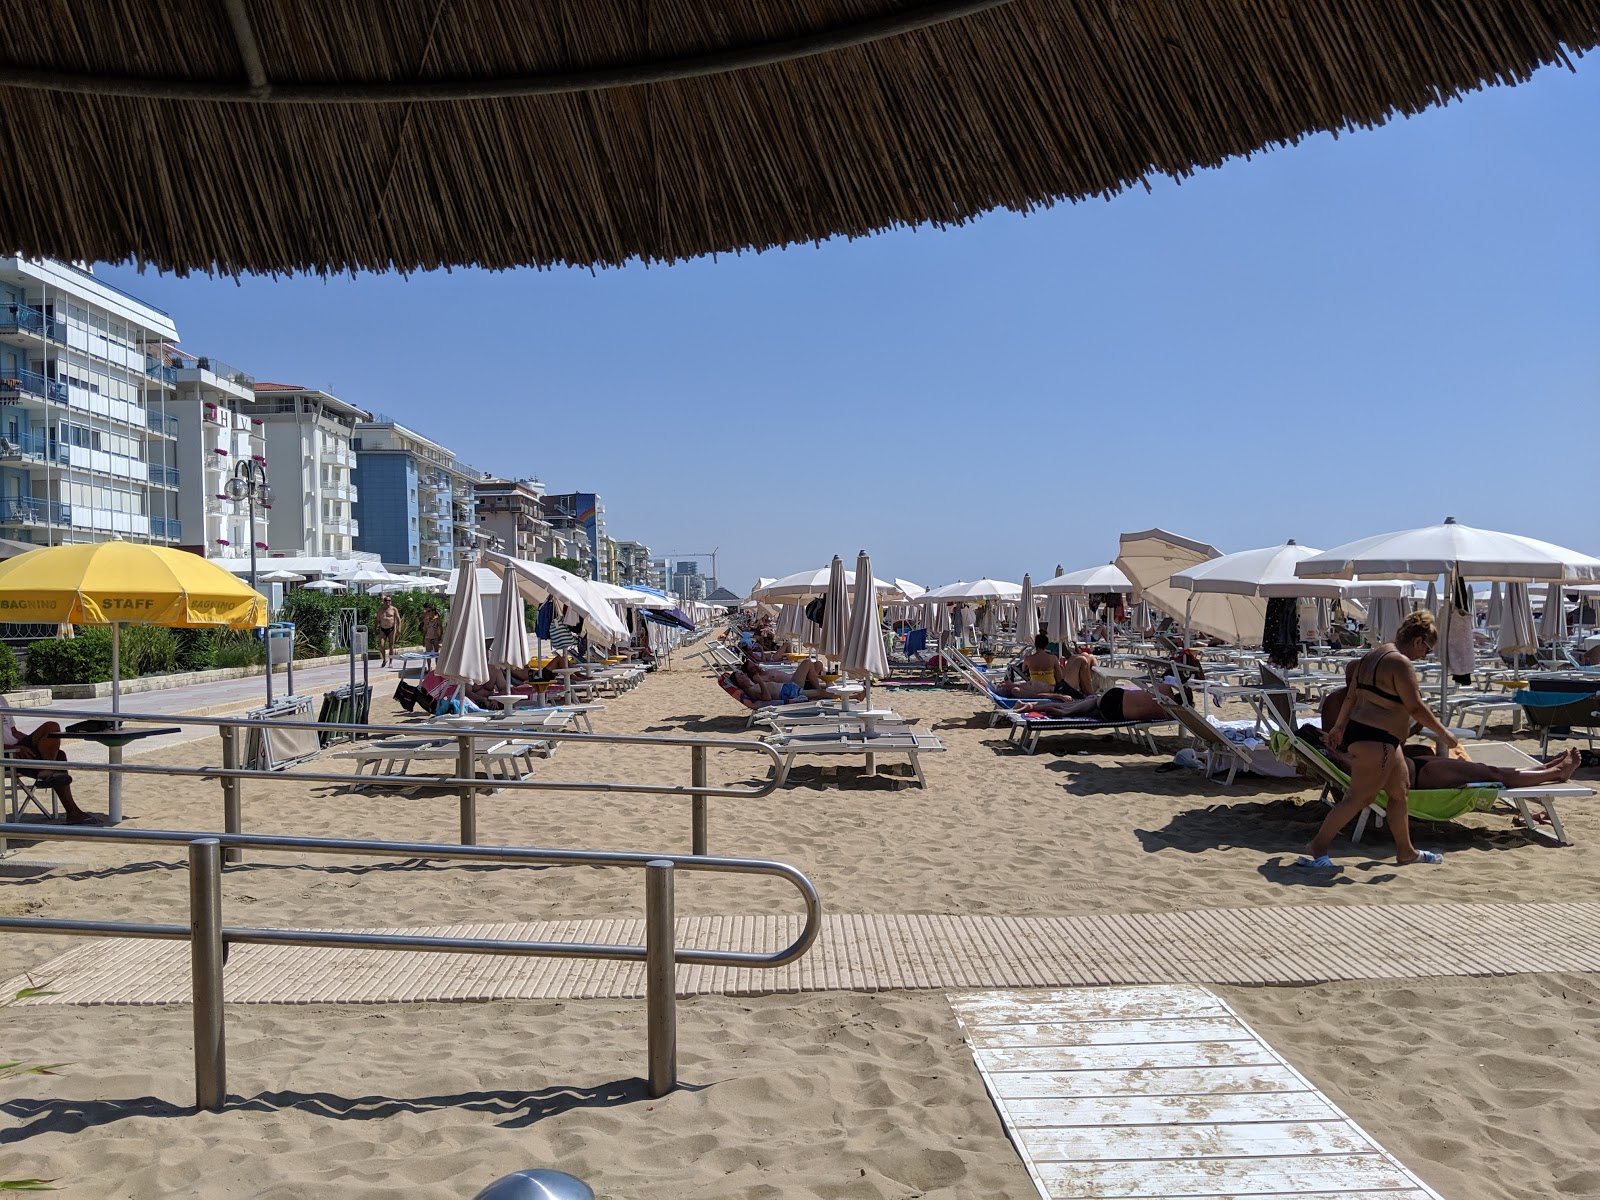 Foto de Spiaggia del Faro - lugar popular entre los conocedores del relax